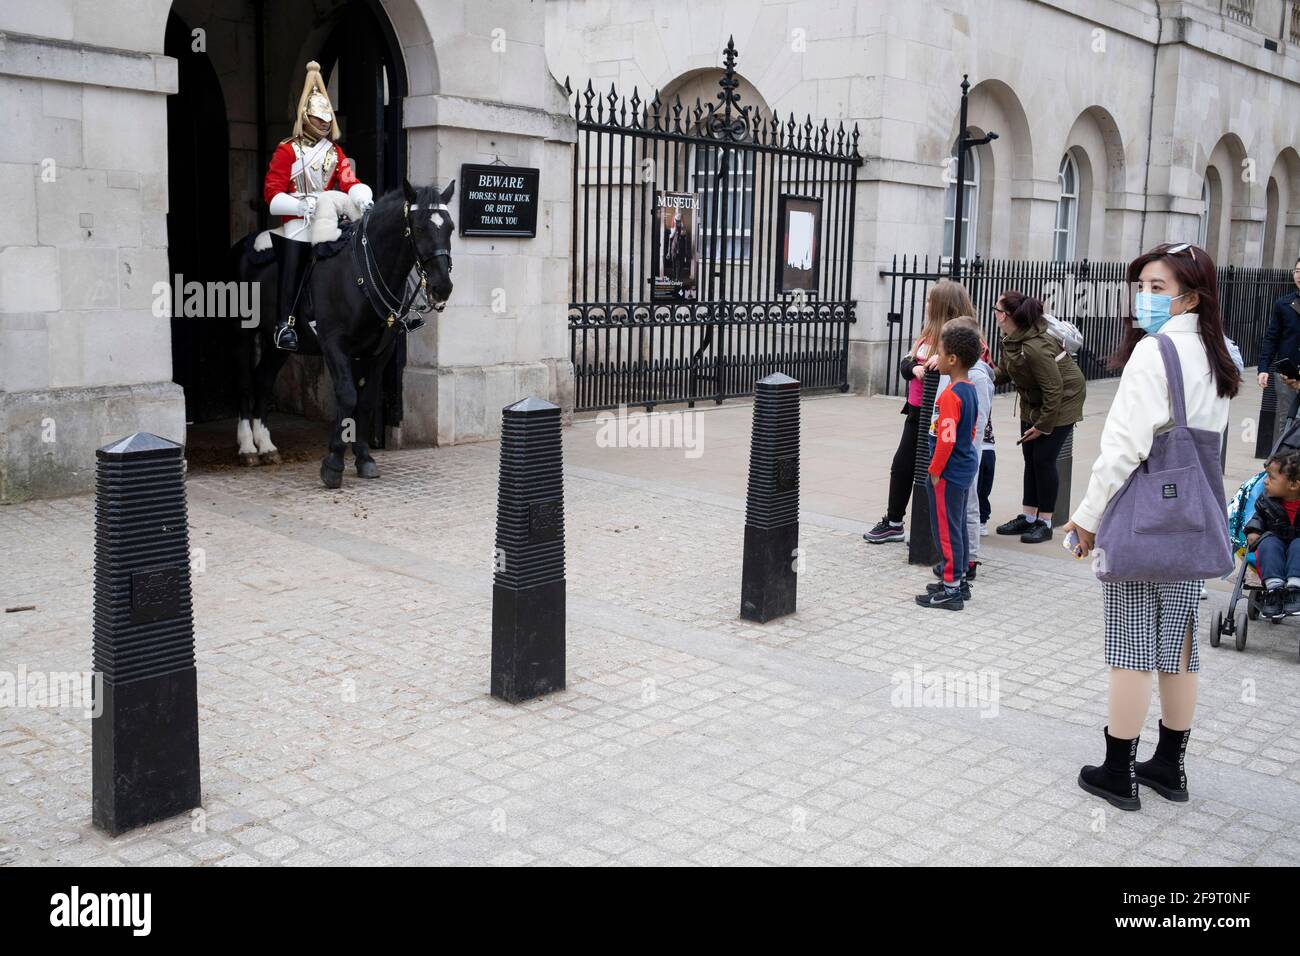 Life Guard à cheval au Horseguards Parade le 14 avril 2021 à Londres, Royaume-Uni. Les gardes de vie sont le régiment principal de l'armée britannique et la moitié de la cavalerie de la maison. Essentiellement ces gardes sont les gardes du corps personnels à la Reine. Ici, à Horse Guards Parade, c'est l'une des plus grandes attractions touristiques de la ville. Banque D'Images